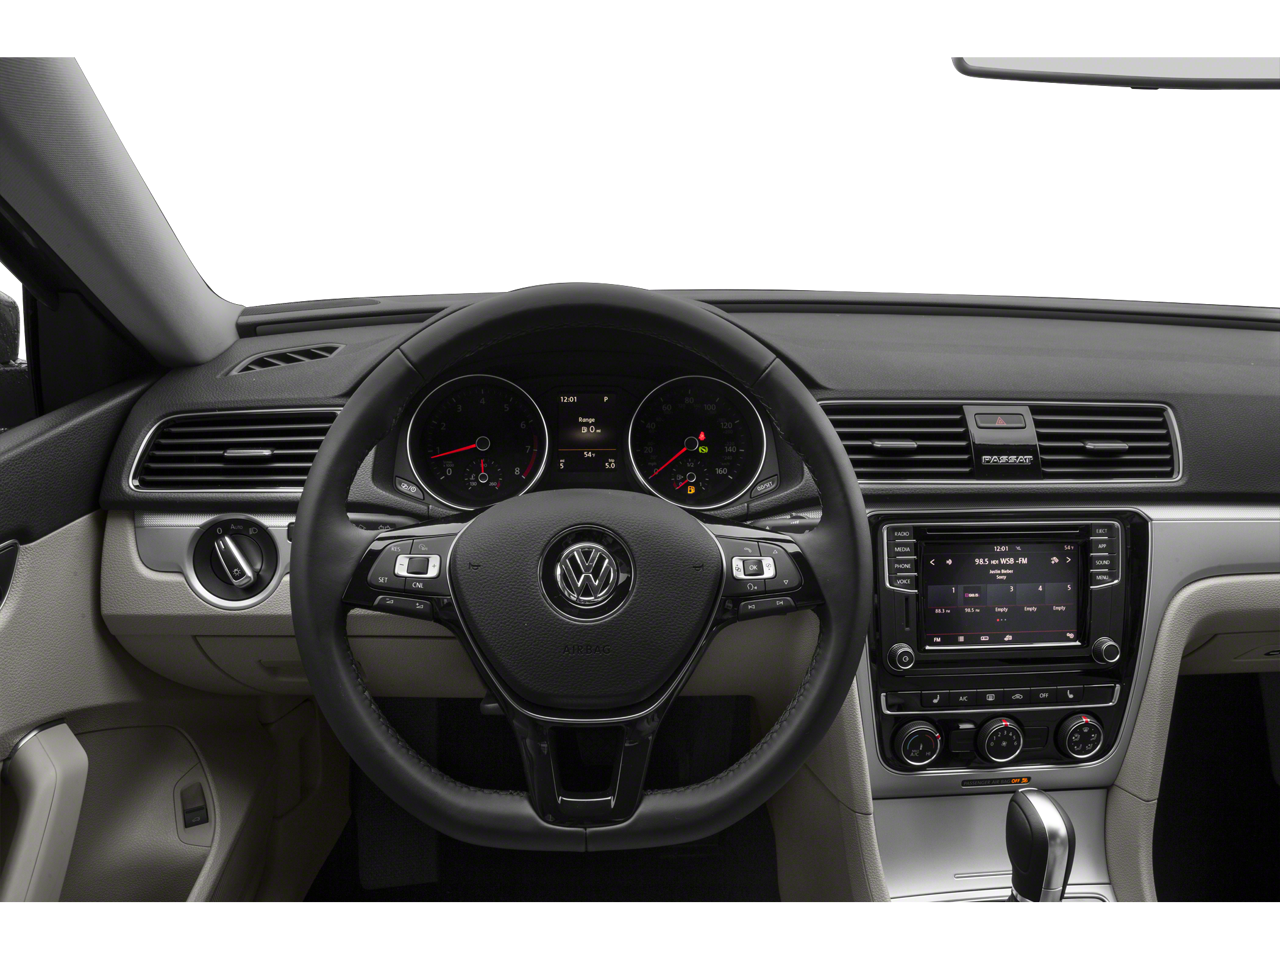 2019 Volkswagen Passat 2.0T Wolfsburg